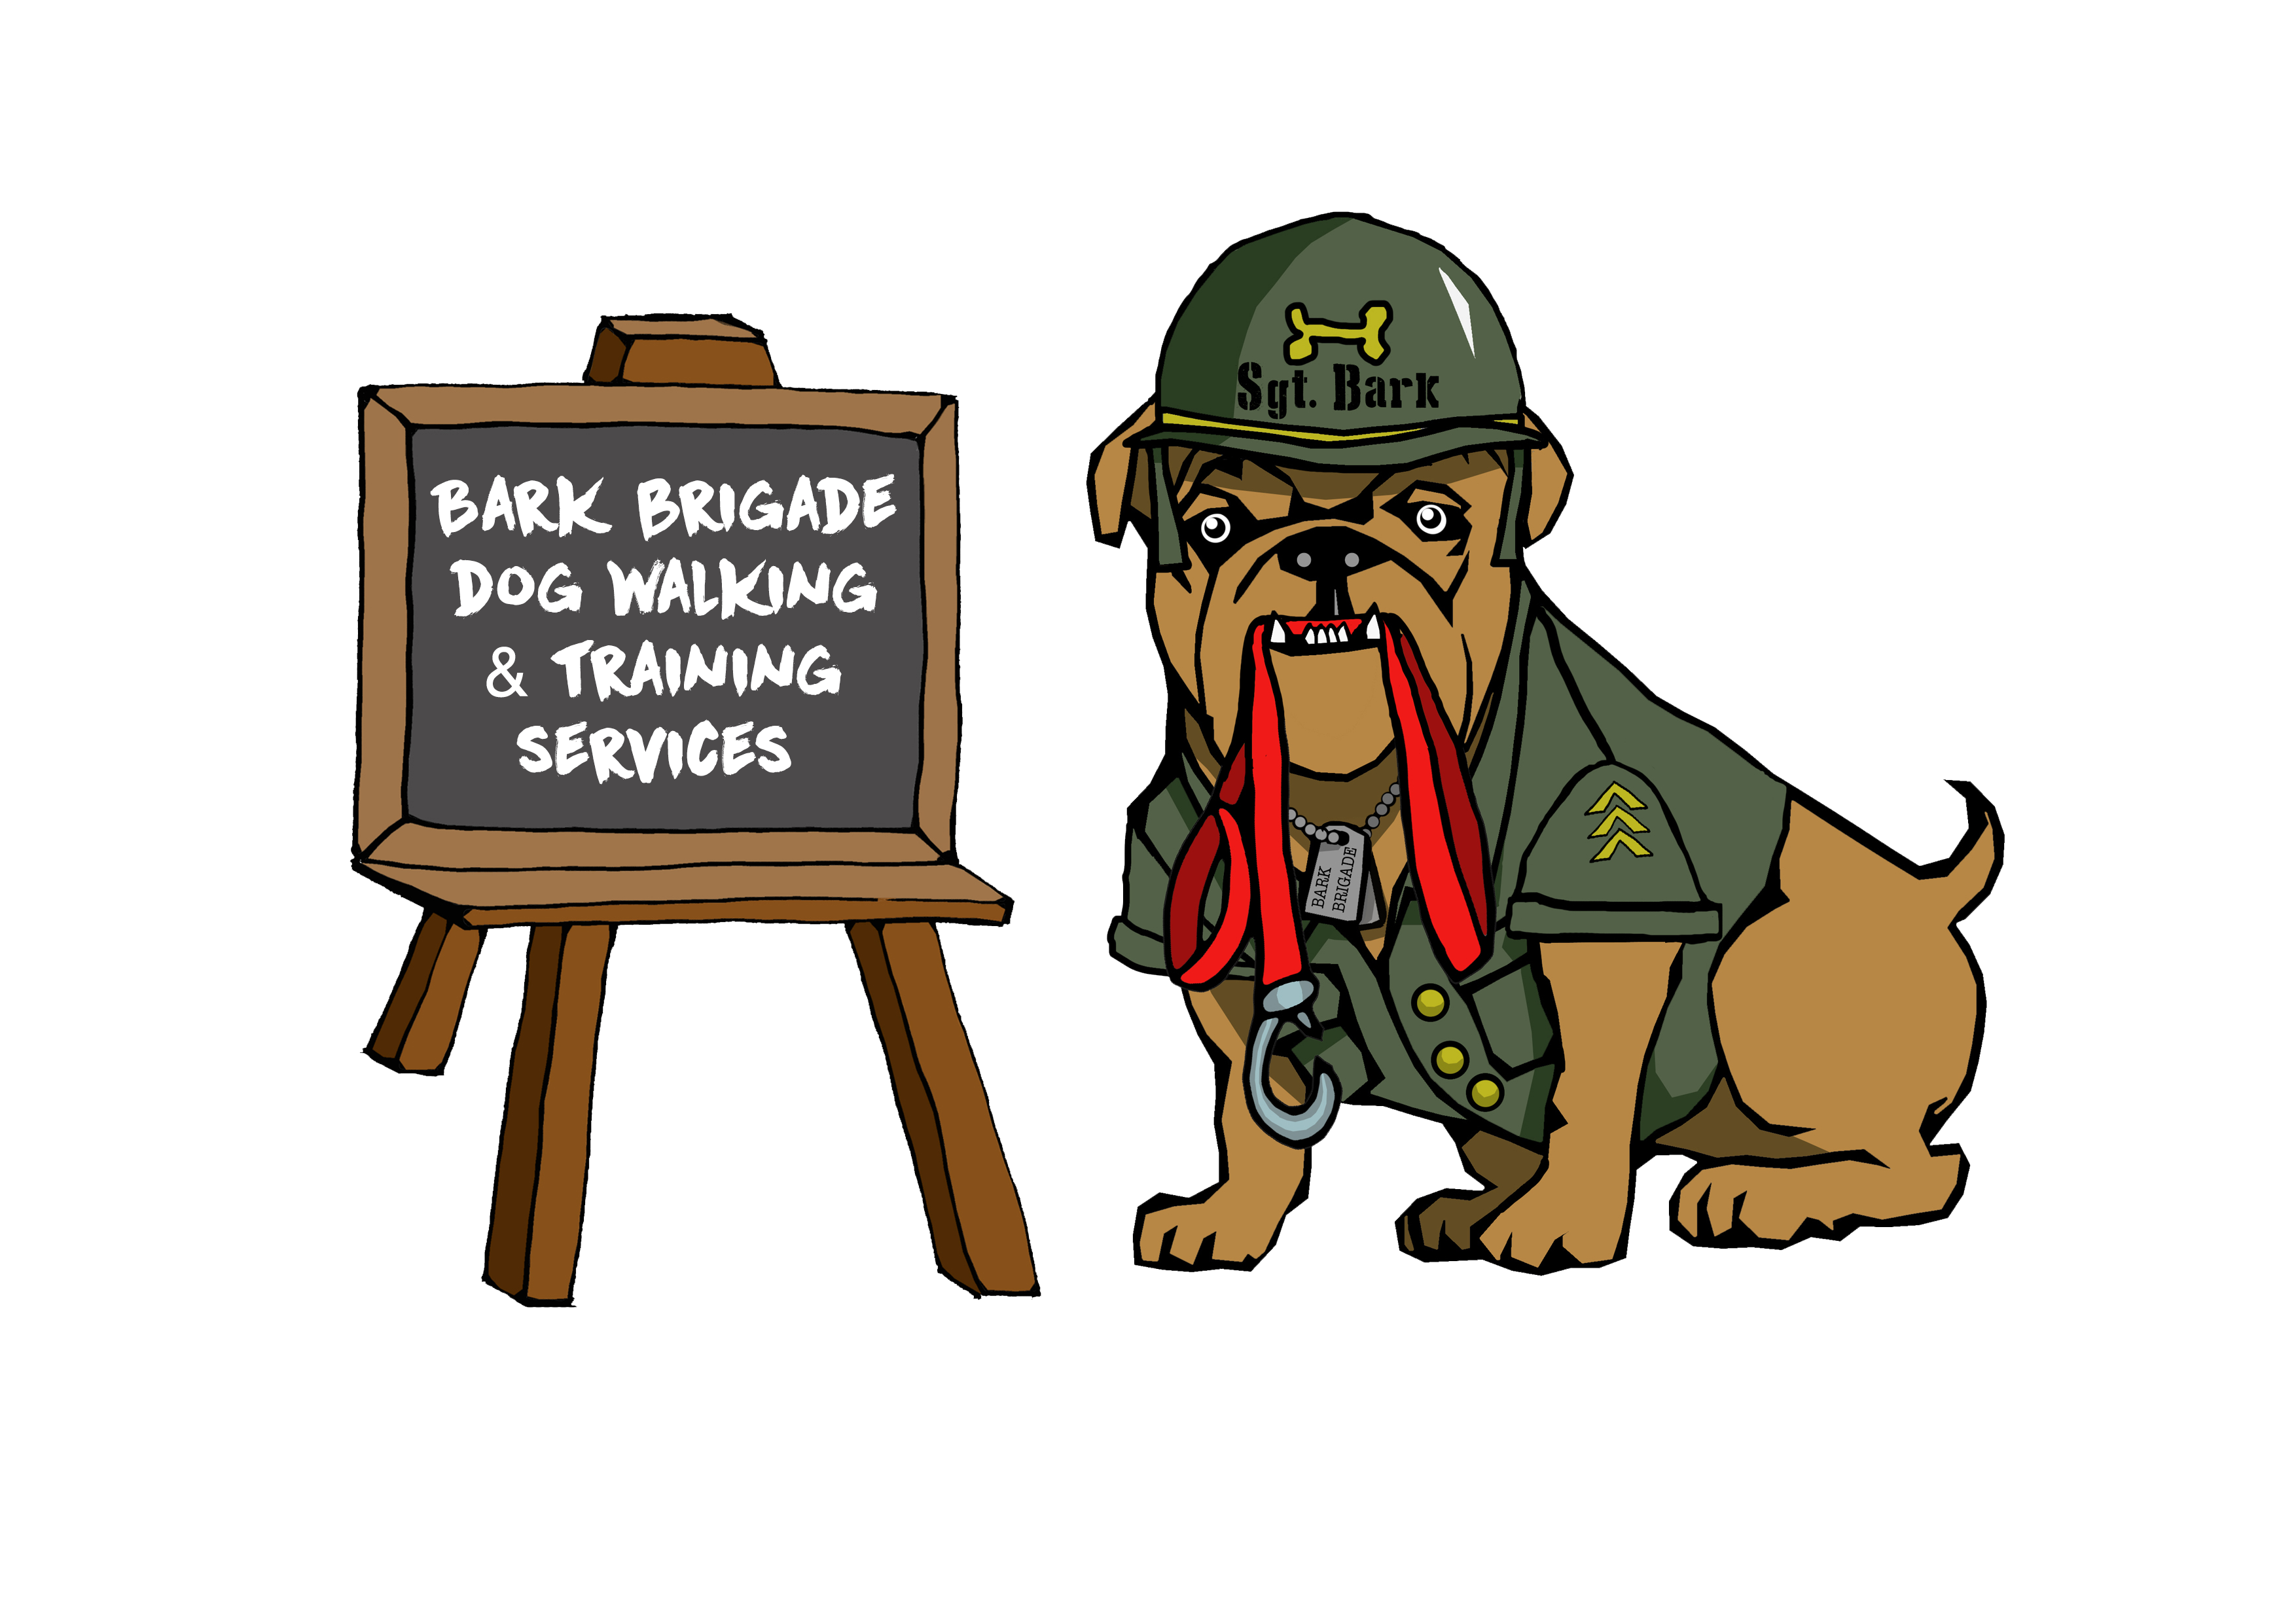 Sgt Bark holding a lead sitting beside a blackboard